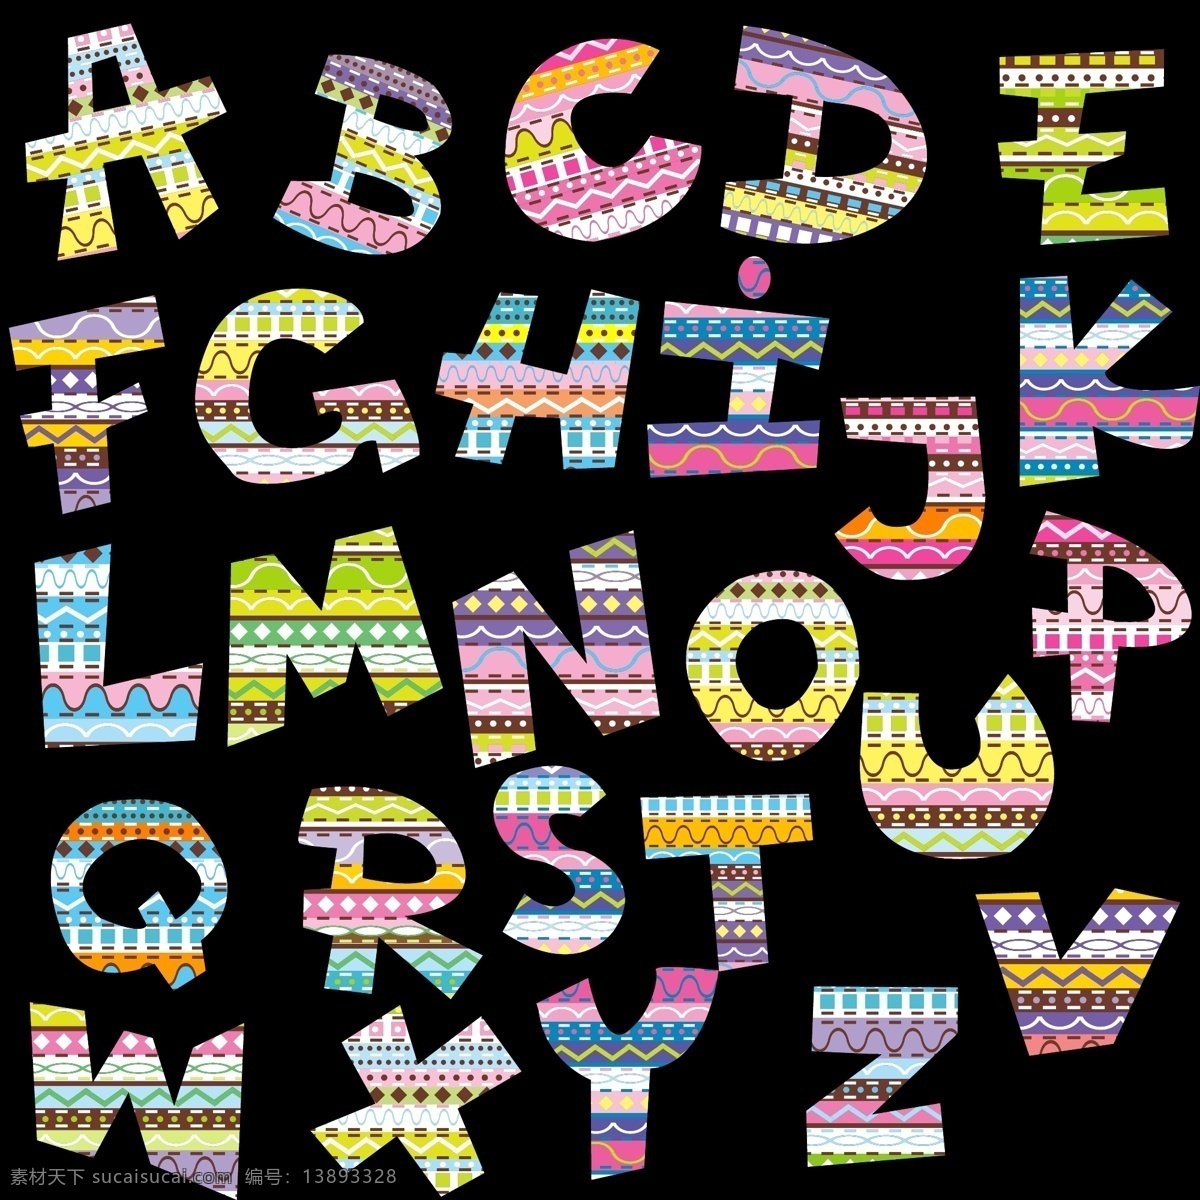 卡通字母 图案字母 线条数字 线条字母 粉笔数字 粉笔字母 线描字母 简洁字母 简约字母 活泼字母 时尚字母 现代字母 彩色字母 矢量字母 手绘字母 手写字母 字母插画 创意字母 艺术字母 水彩字母 字母设计 大写字母 绚丽字母 炫彩字母 酷炫字母 数字字母 标志图标 其他图标